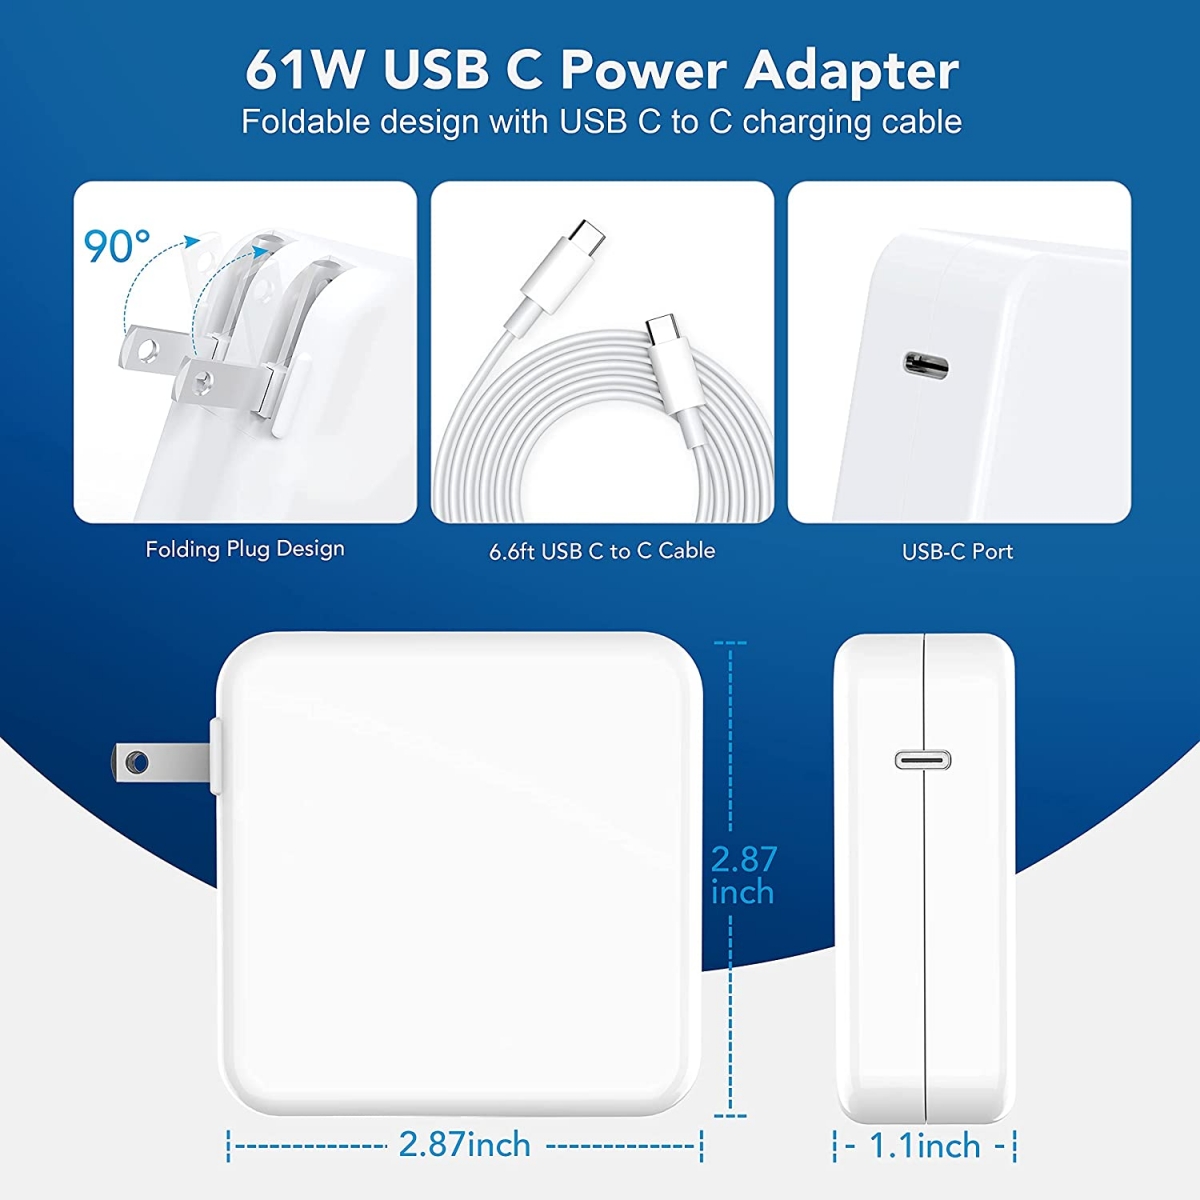 61W USB C Charger Power Adapter-CPY,ලැප්ටොප් බැටරි, ලැප්ටොප් ඇඩැප්ටරය, ලැප්ටොප් චාජර්, ඩෙල් බැටරි, ඇපල් බැටරි, HP බැටරි